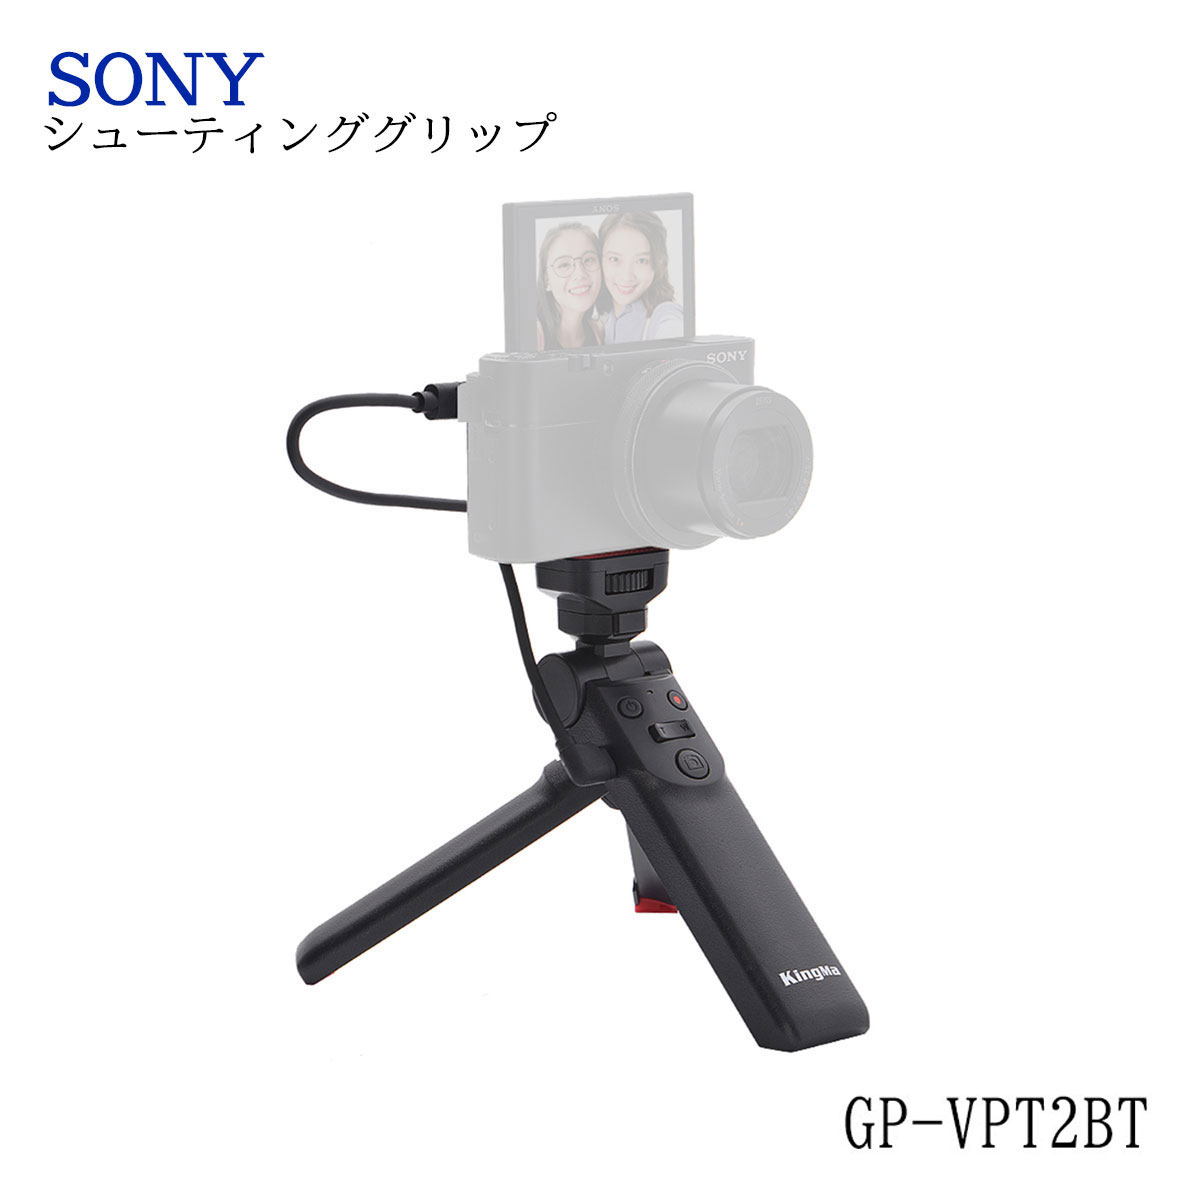 1560円 新色 SONY VCT-SGR1 シューティング グリップ 超美品